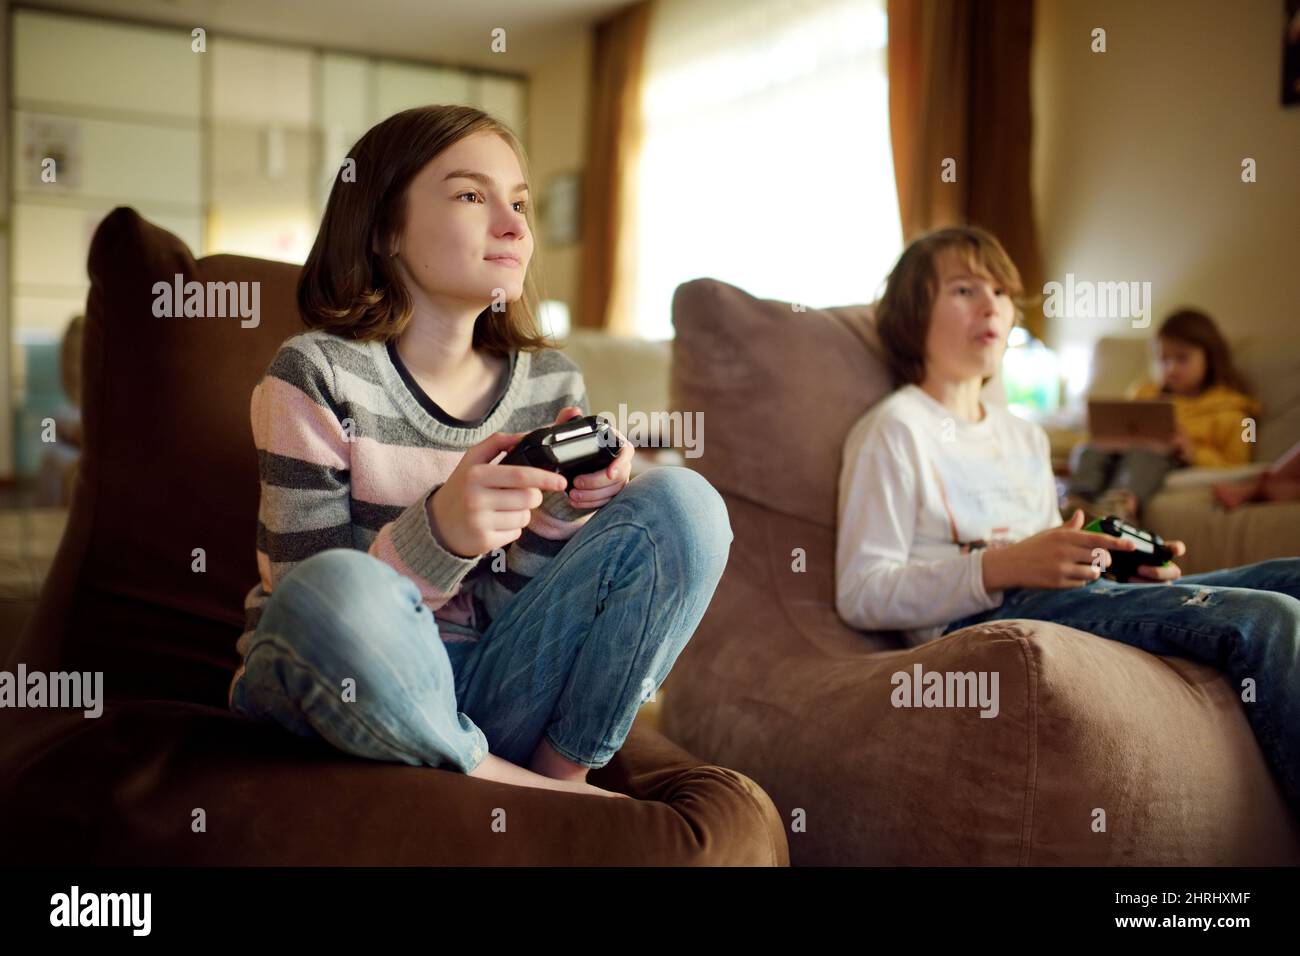 Eine Gruppe von Jugendlichen Kindern, die zu Hause Videospiele spielen. Kinder, die auf der Couch sitzen und Gaming-Controller halten. Familienspaß und Spaß im Innenbereich Stockfoto